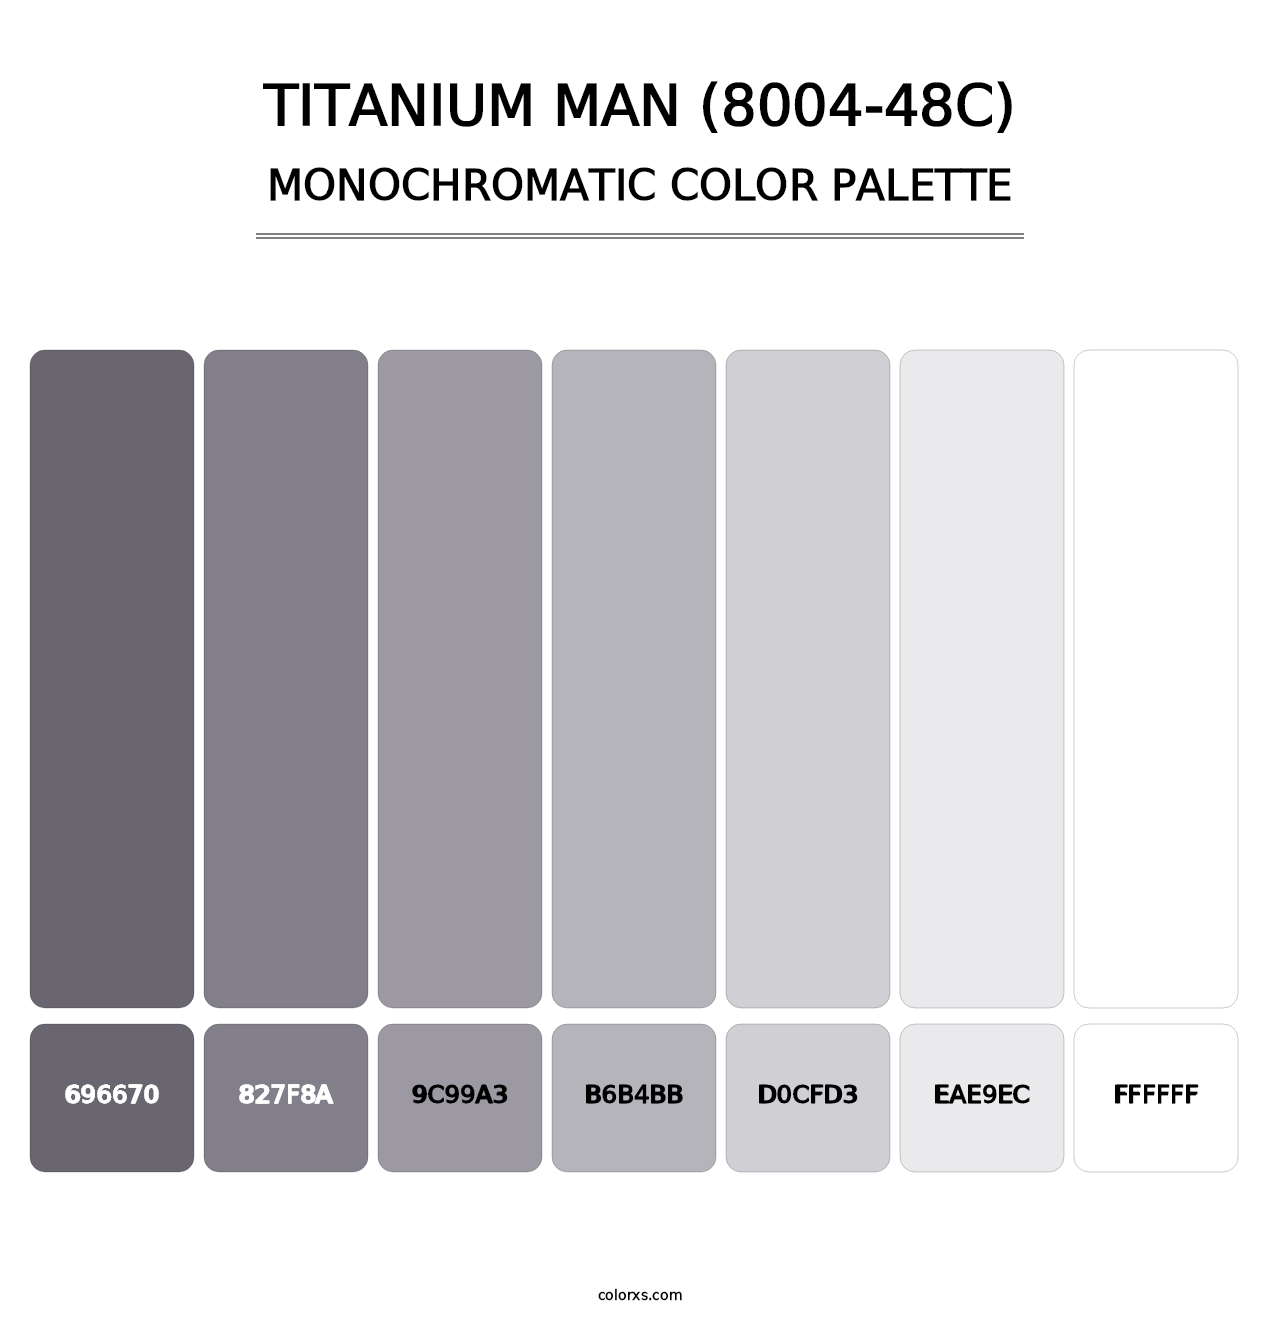 Titanium Man (8004-48C) - Monochromatic Color Palette